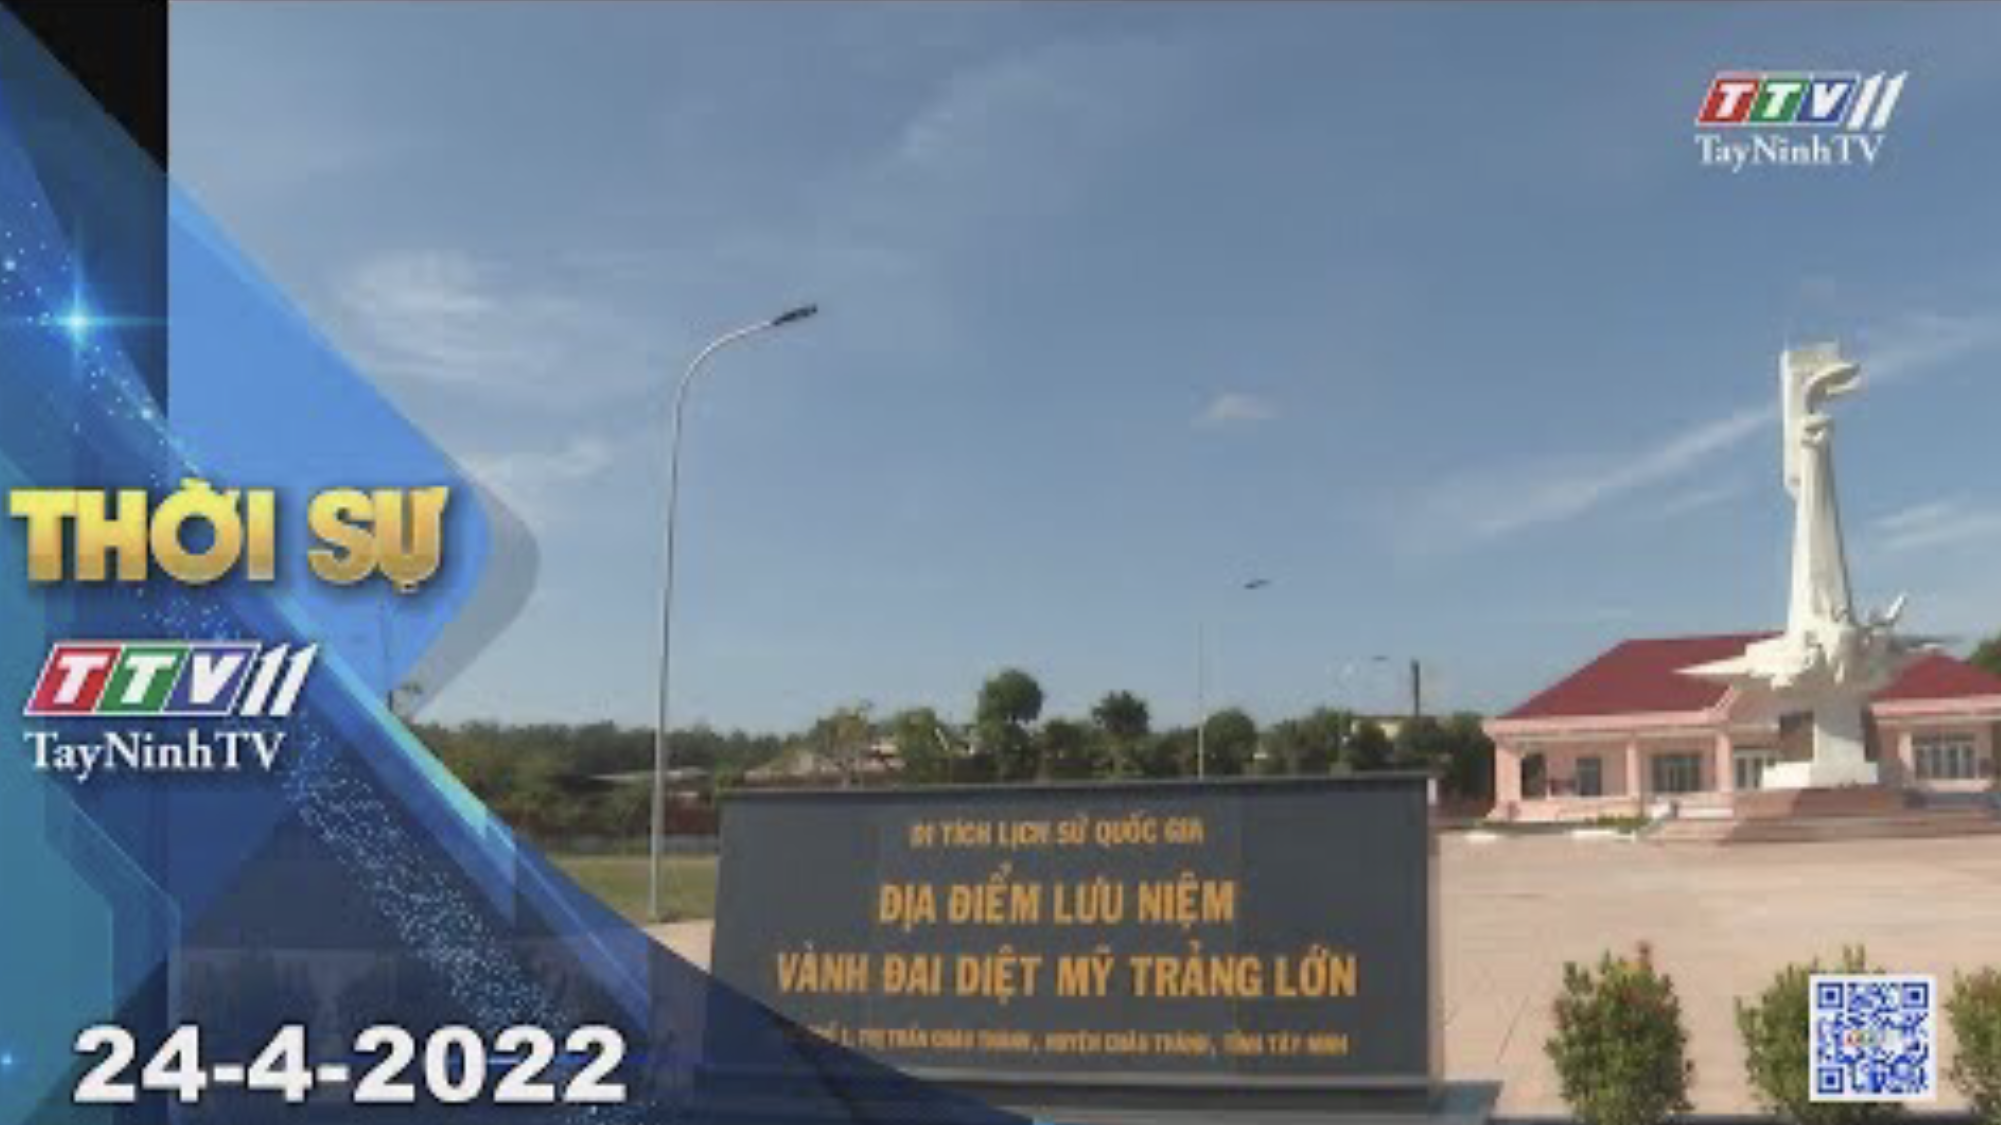 Thời sự Tây Ninh 24-4-2022| Tin tức hôm nay | TayNinhTV